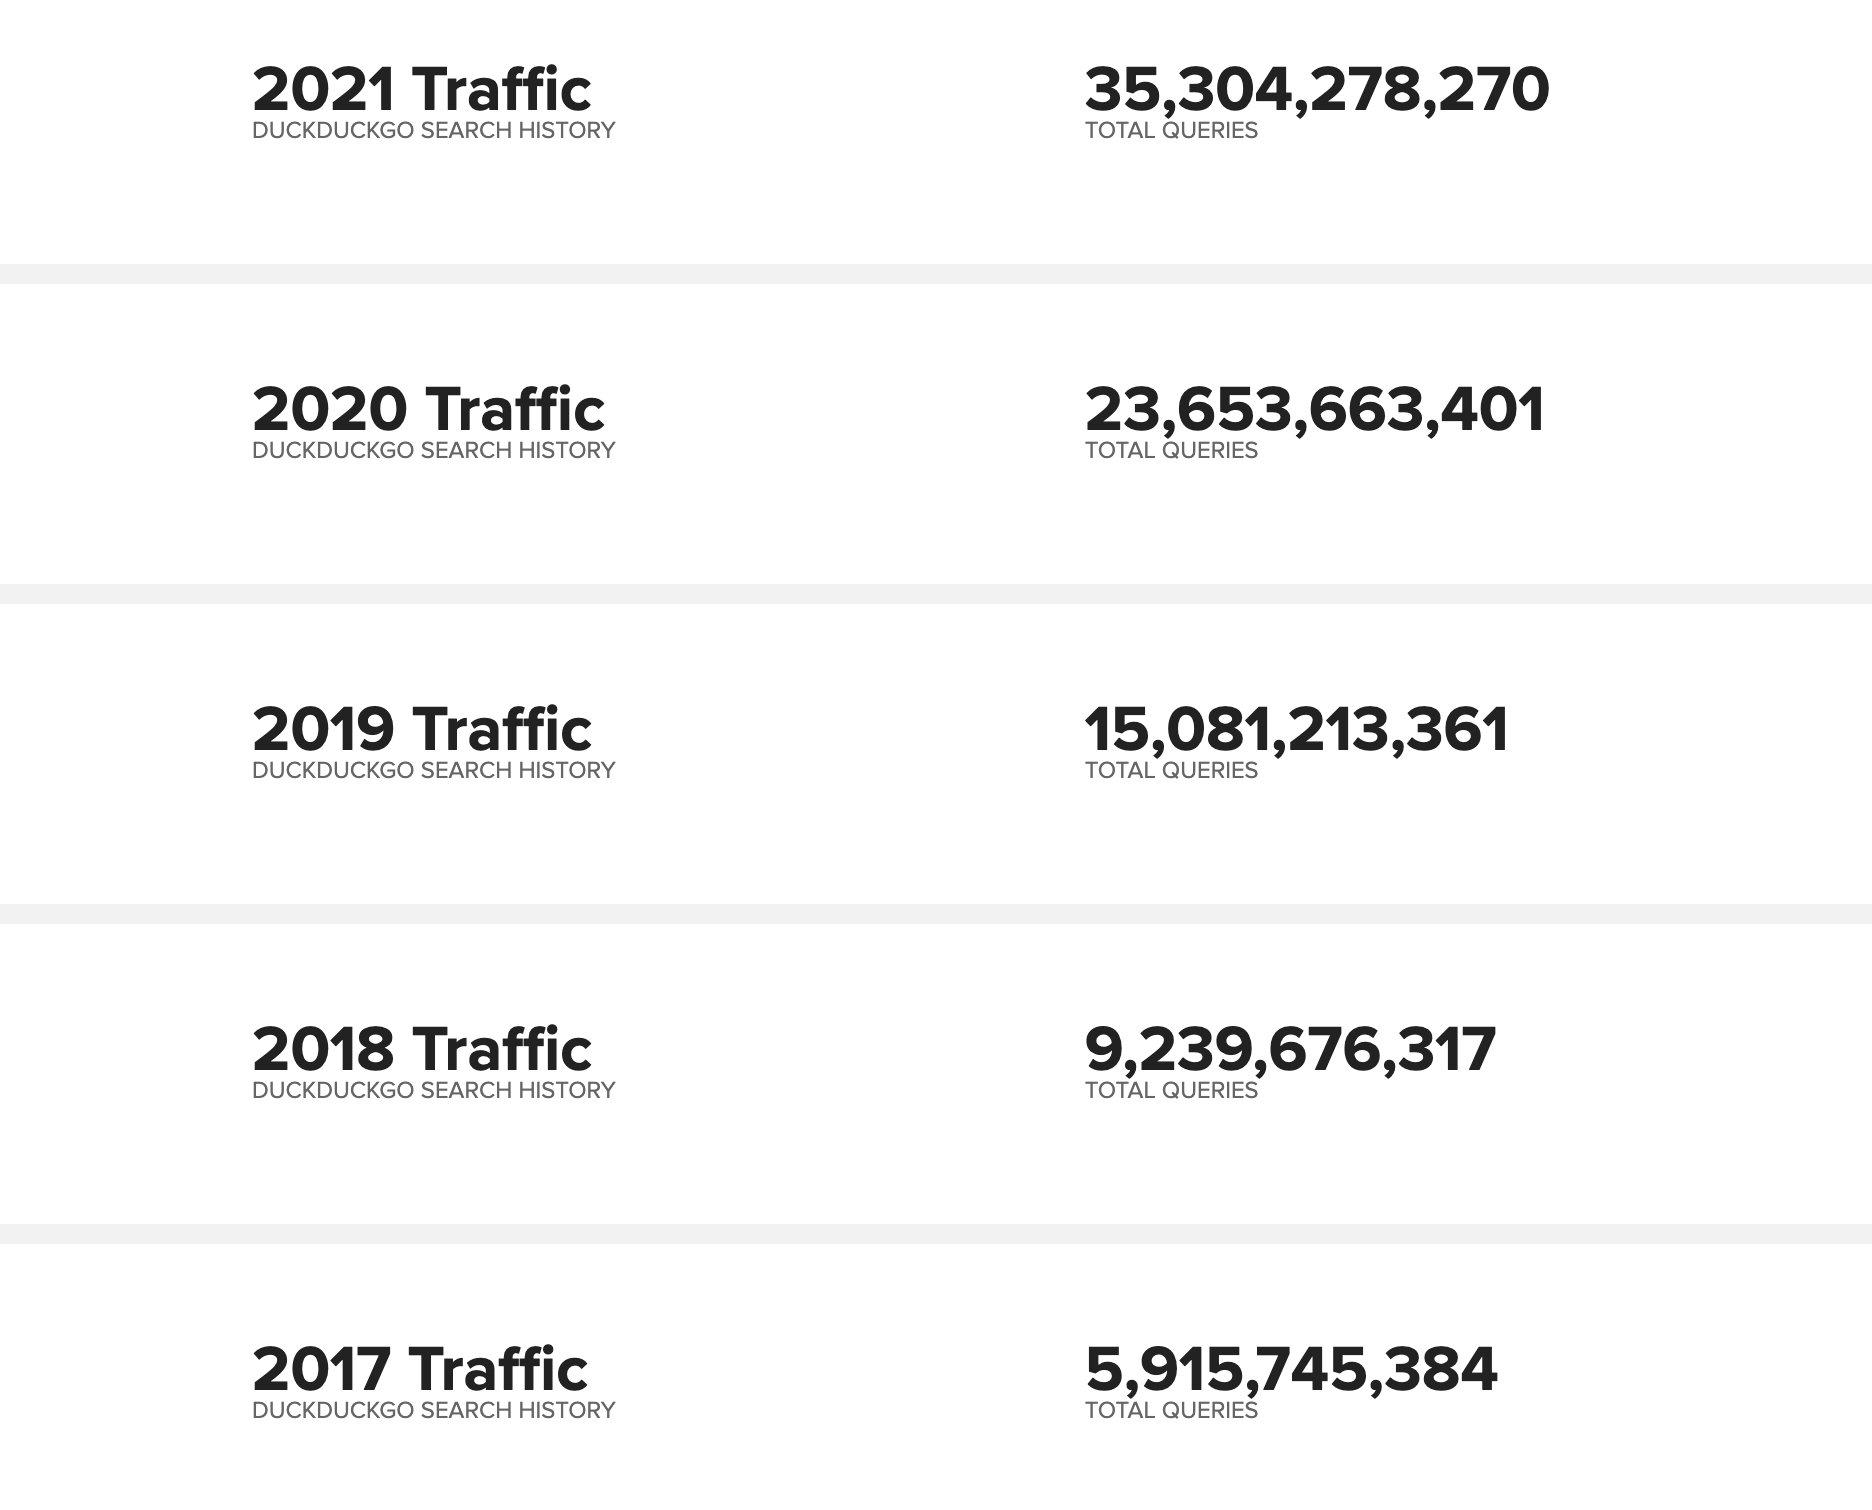 DuckDuckGo traffic annual growth.